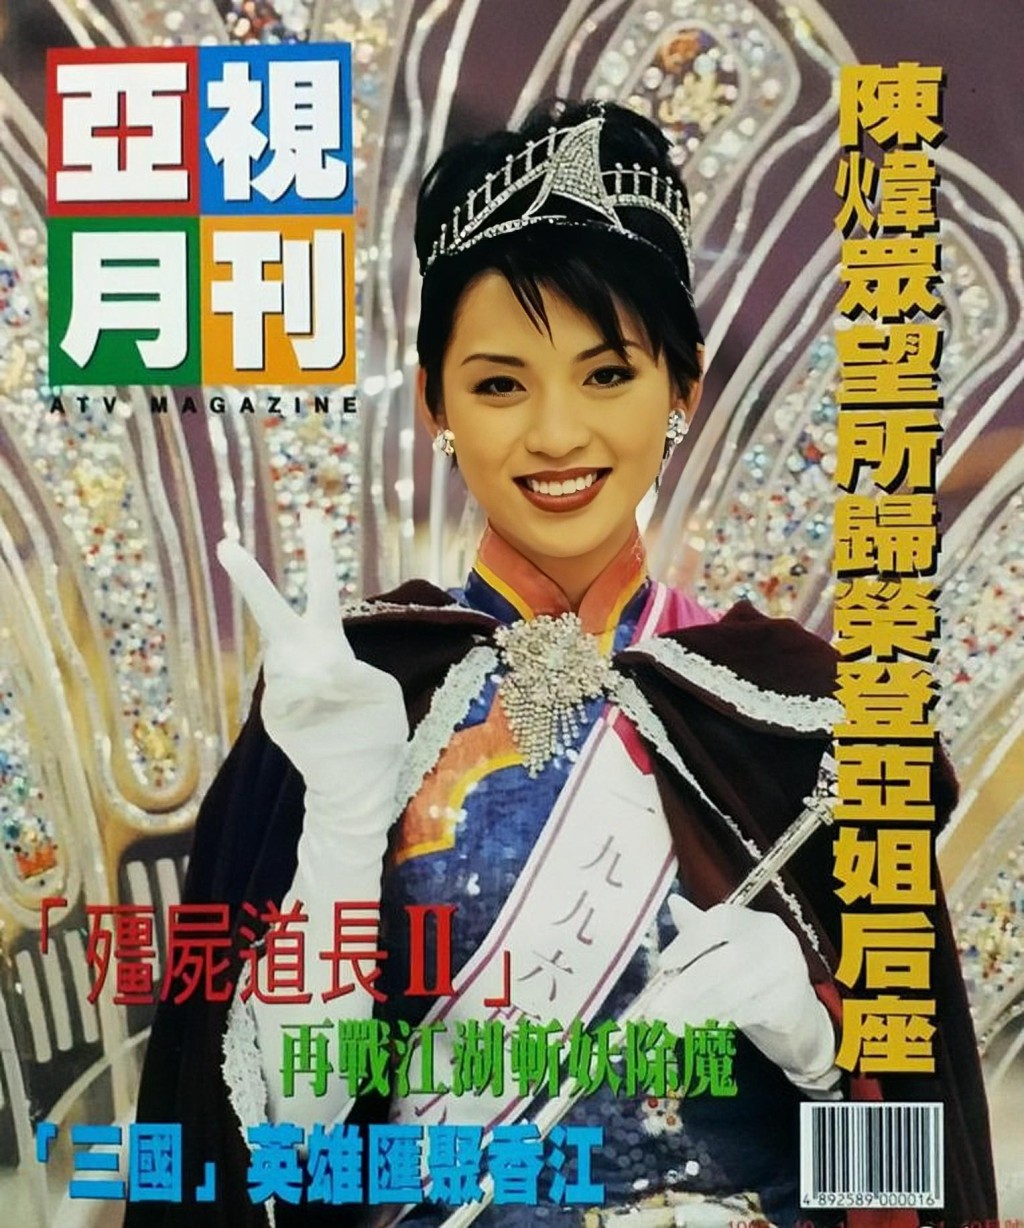 去年有网民于facebook专页「90年代回忆」分享一张亚视月刊的封面照。